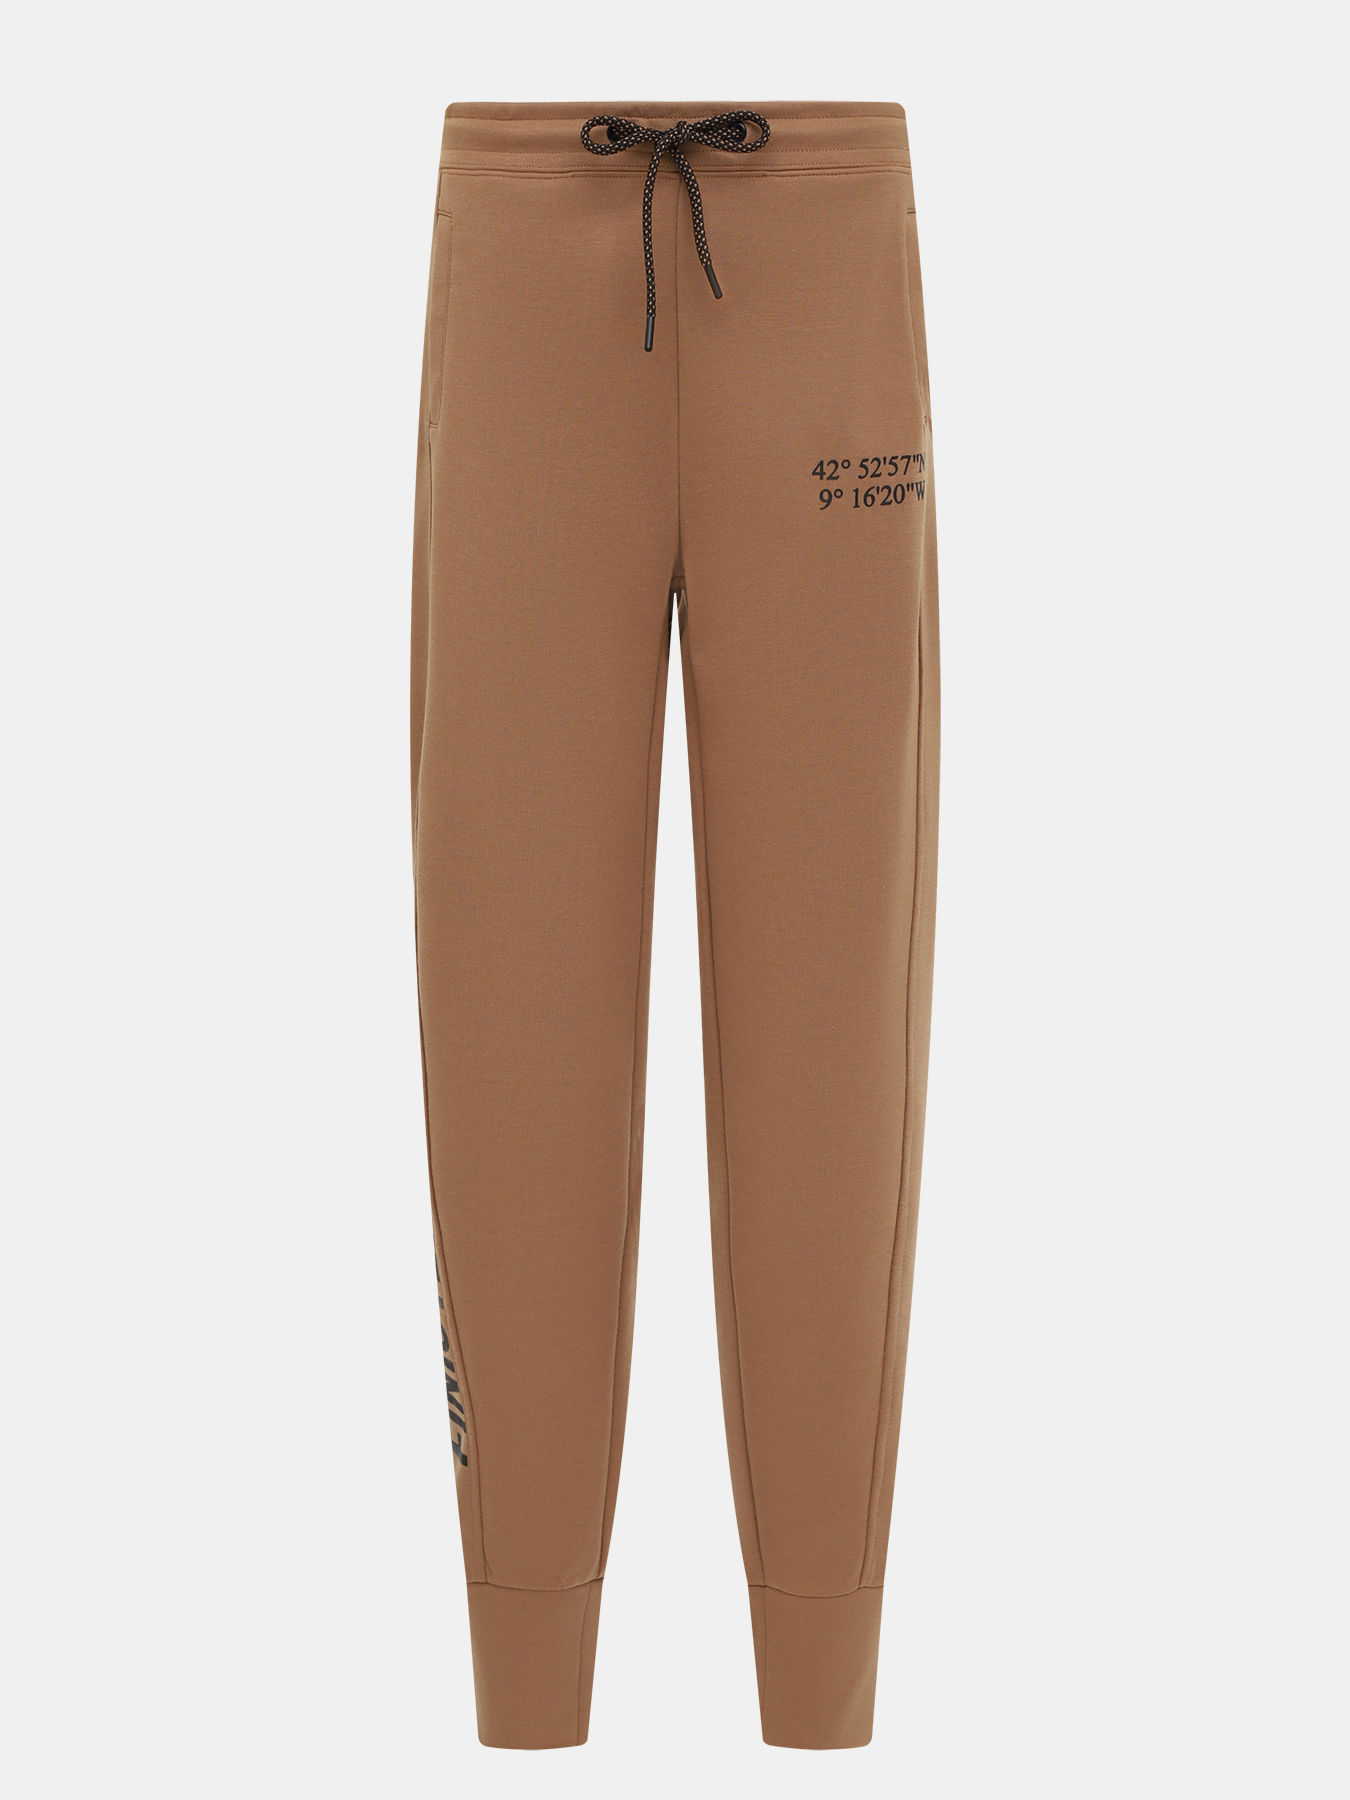 Спортивные брюки Finisterre. Цвет: коричневый